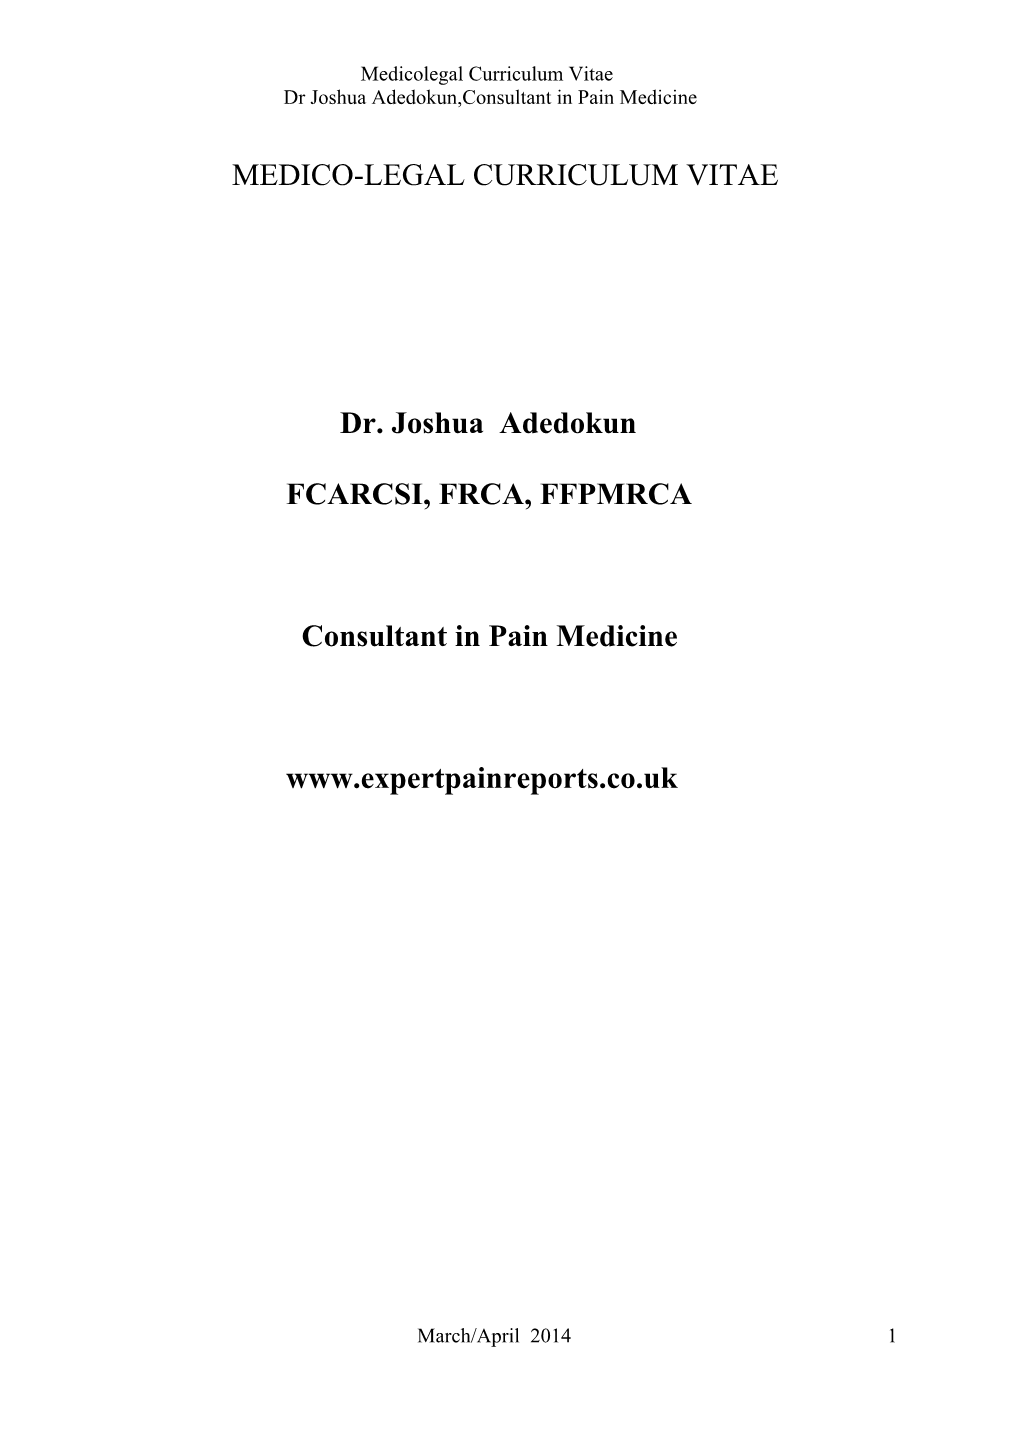 MEDICO-LEGAL CURRICULUM VITAE Dr. Joshua Adedokun FCARCSI, FRCA, FFPMRCA Consultant in Pain Medicine